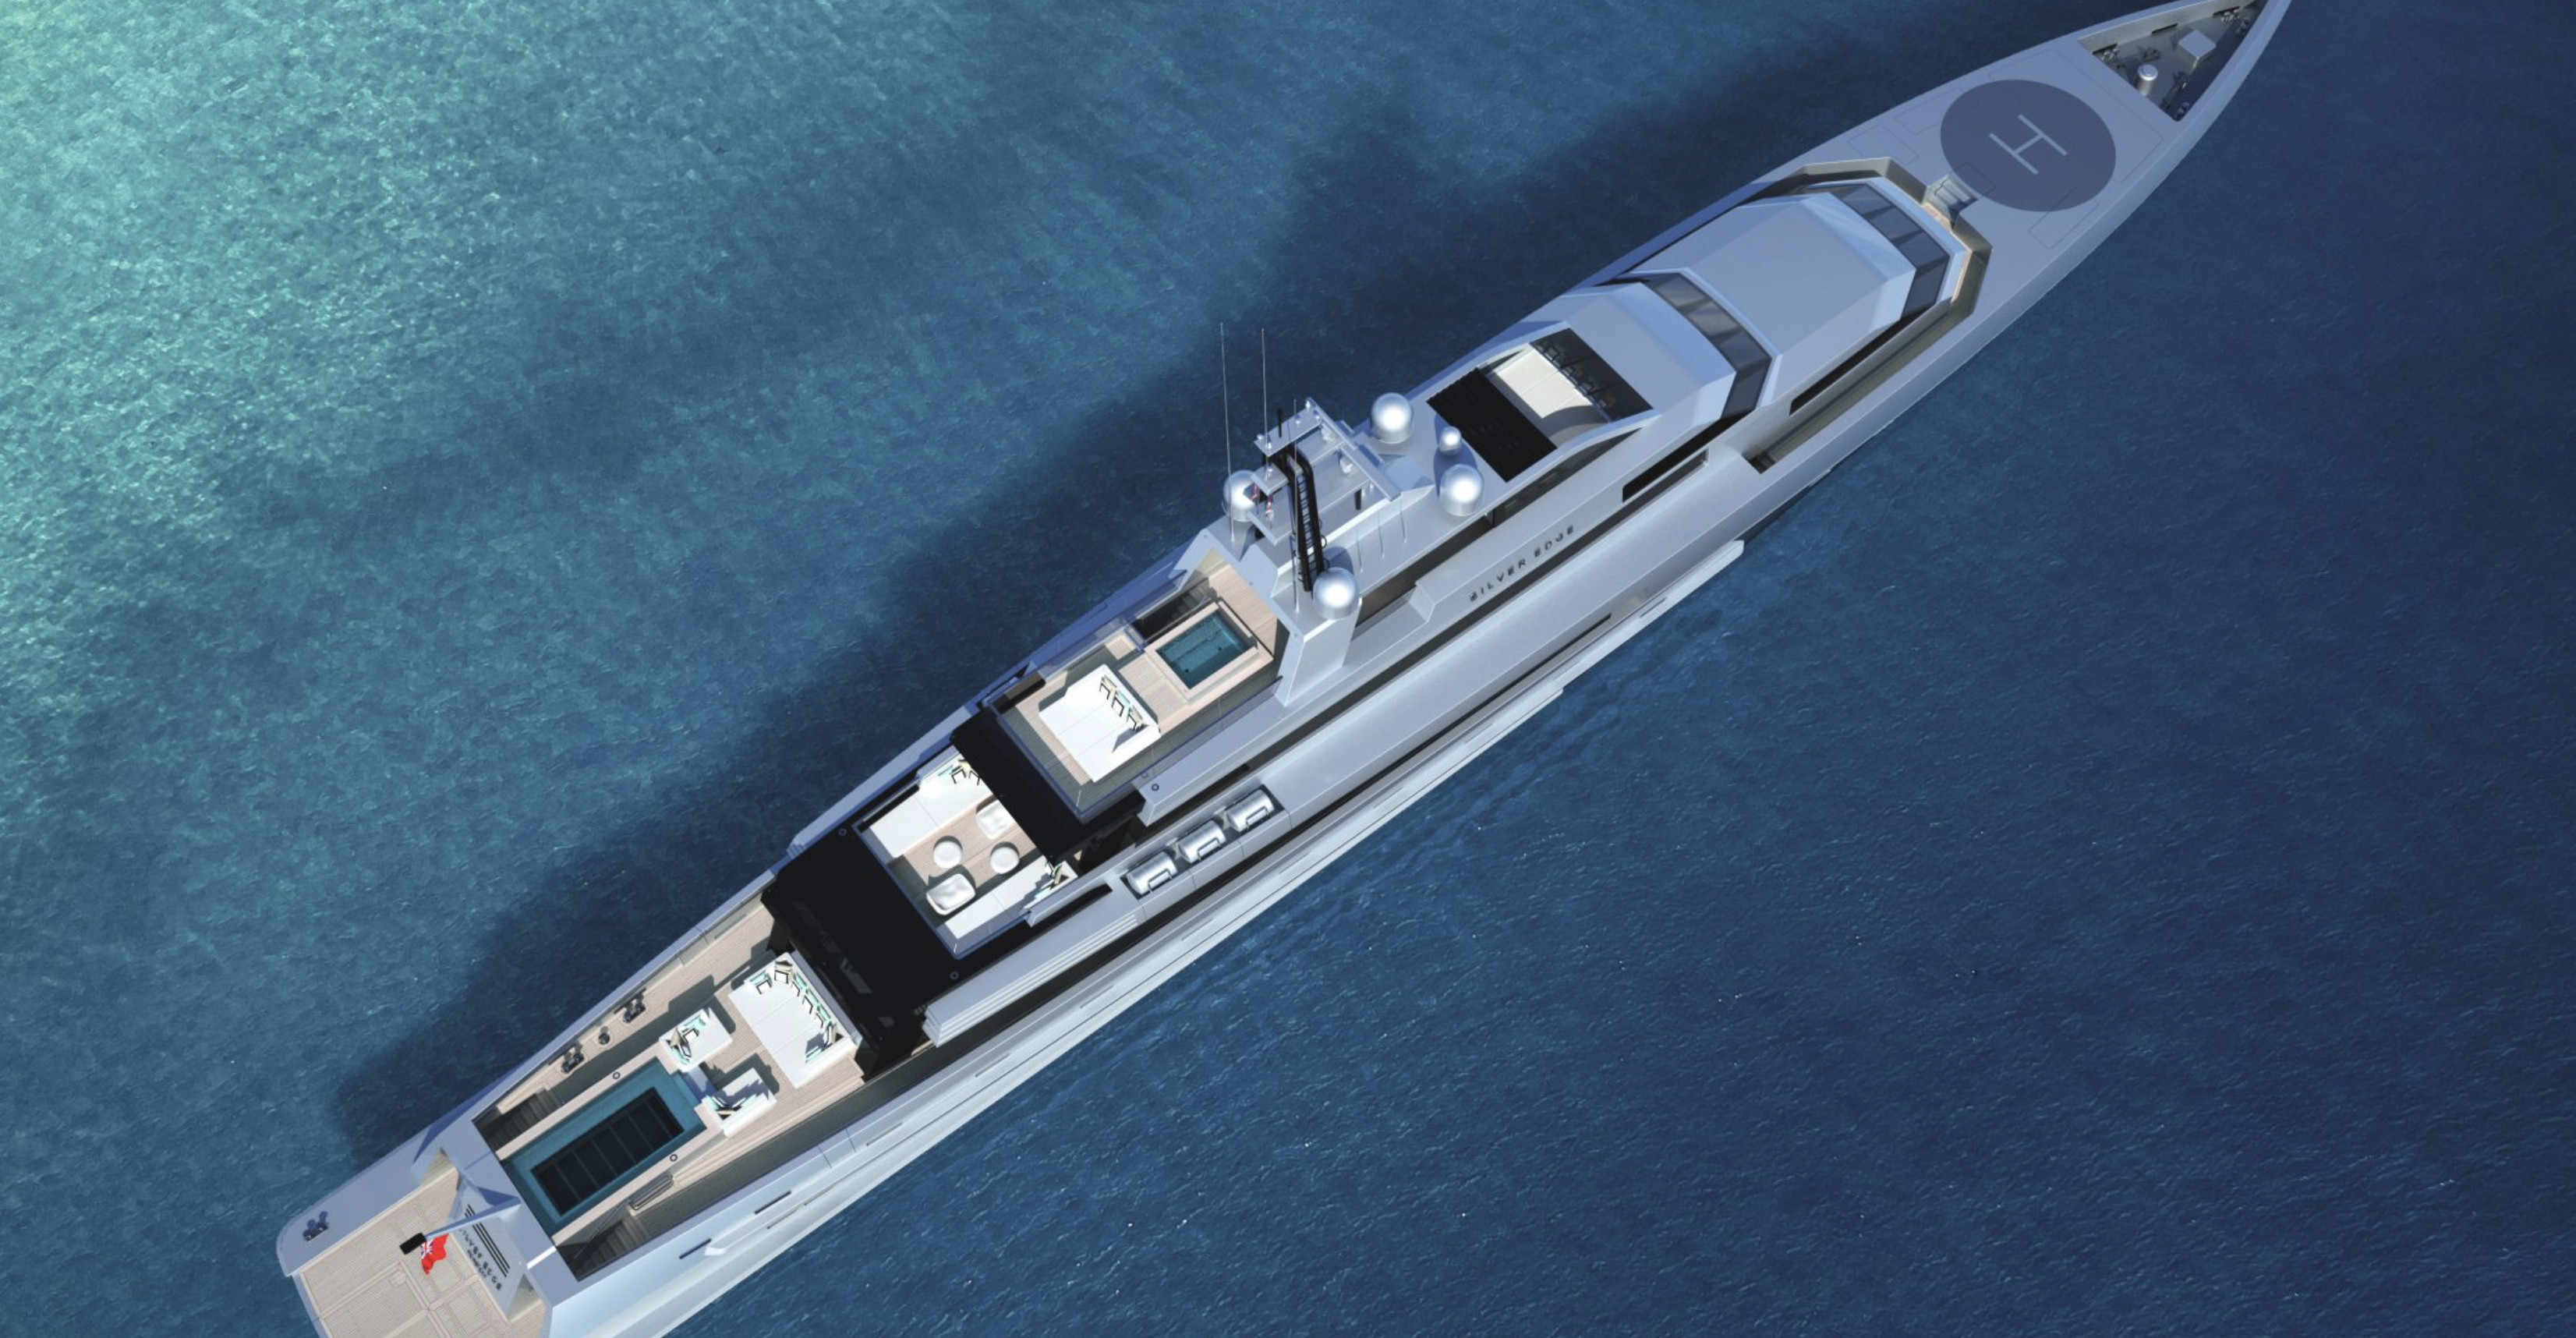  Silver Yachts, yate más lujoso